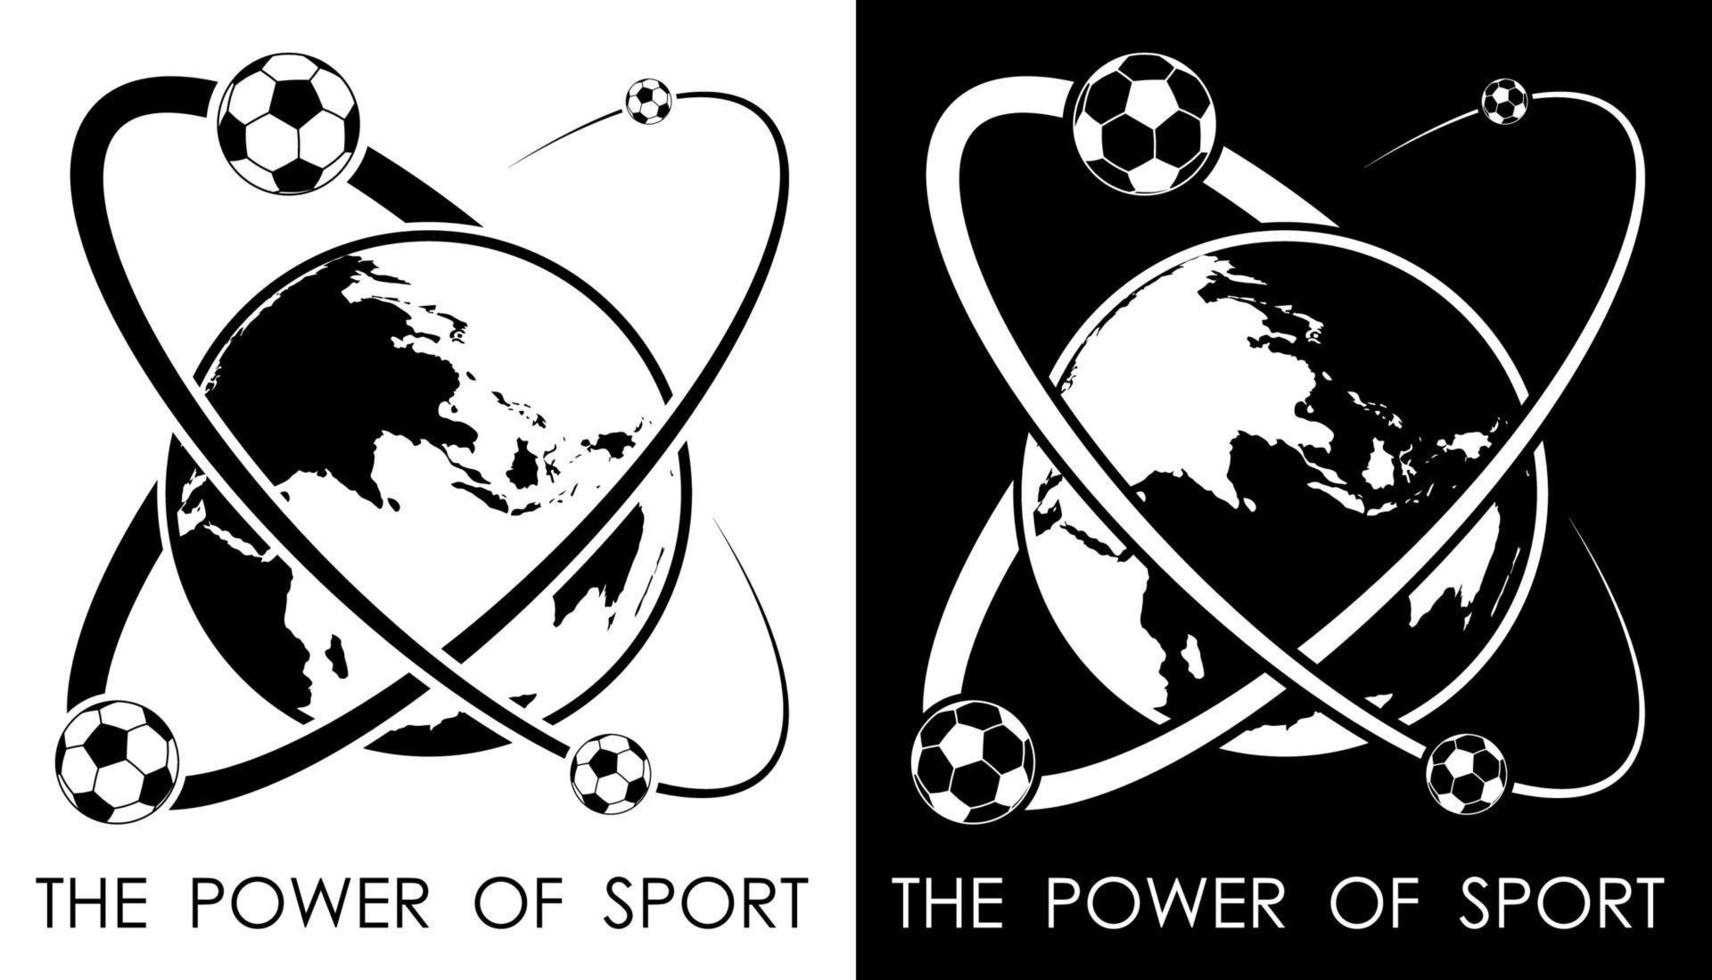 voetbal ballen draaien in de omgeving van planeet aarde in het formulier van atoom. macht en energie van sport. Amerikaans voetbal sport wedstrijd embleem. vector